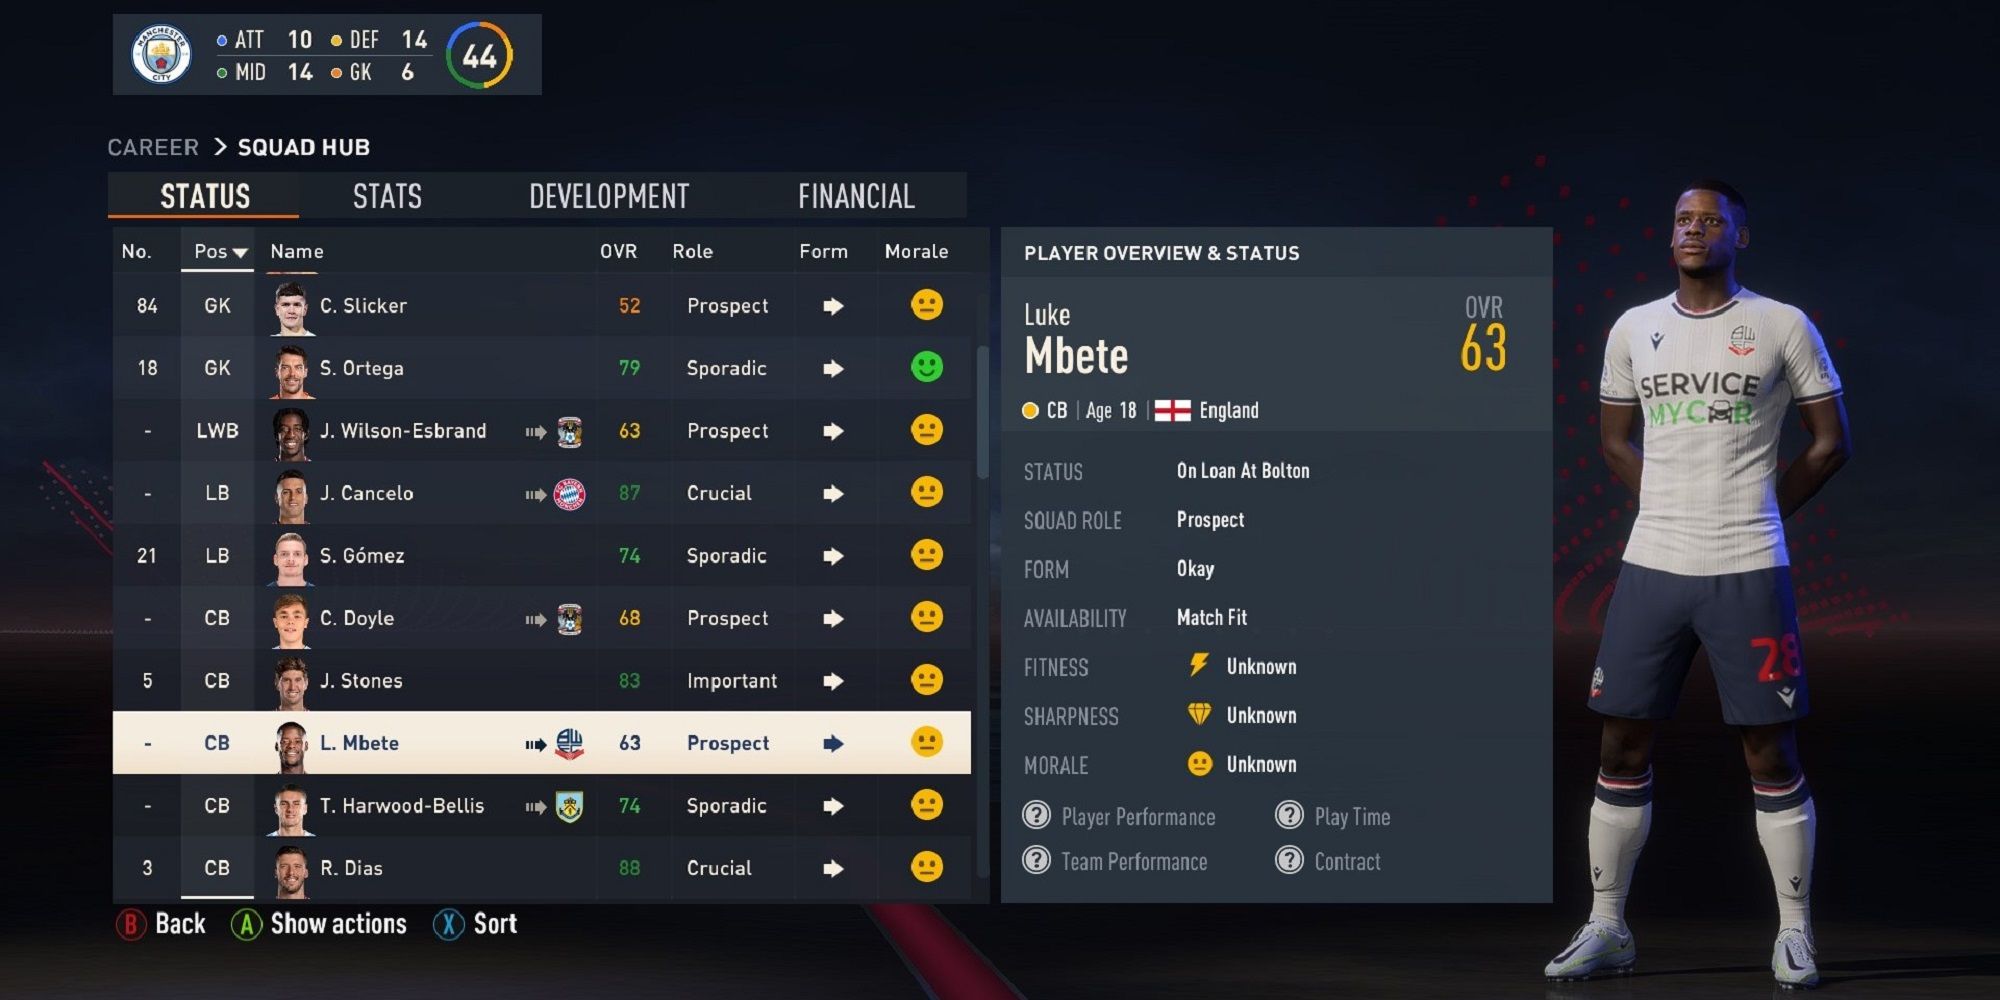 An image of Luke Mbete in FIFA 23